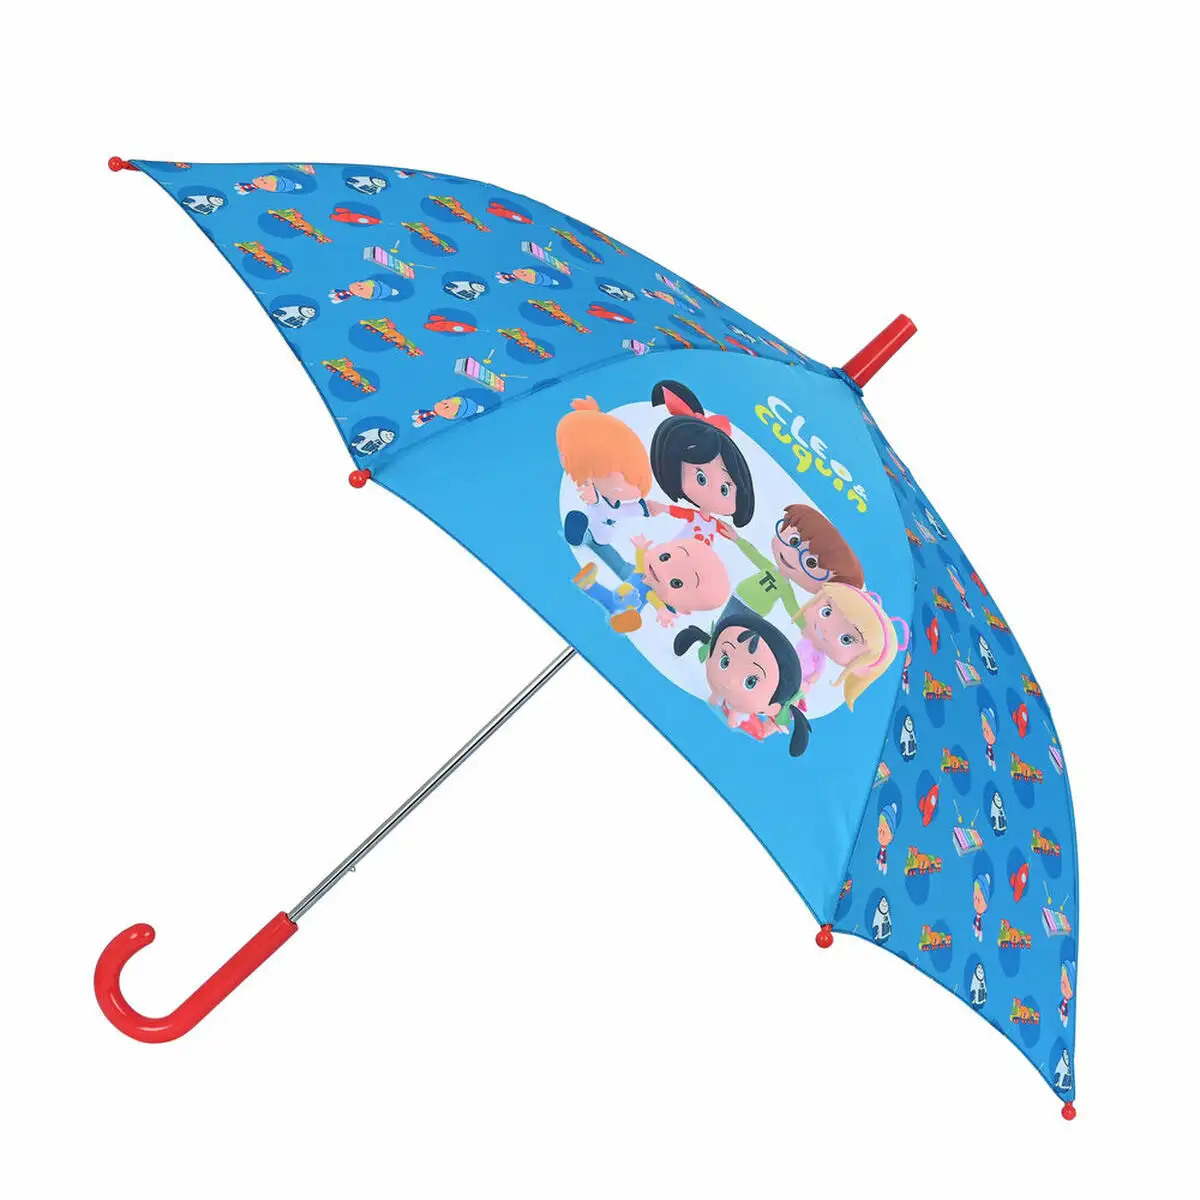 Parapluie cleo cuquin good night bleu o 86 cm _5113. DIAYTAR SENEGAL - Votre Portail Vers l'Élégance Accessible. Parcourez notre boutique en ligne pour découvrir des produits qui incarnent le luxe à des prix abordables.